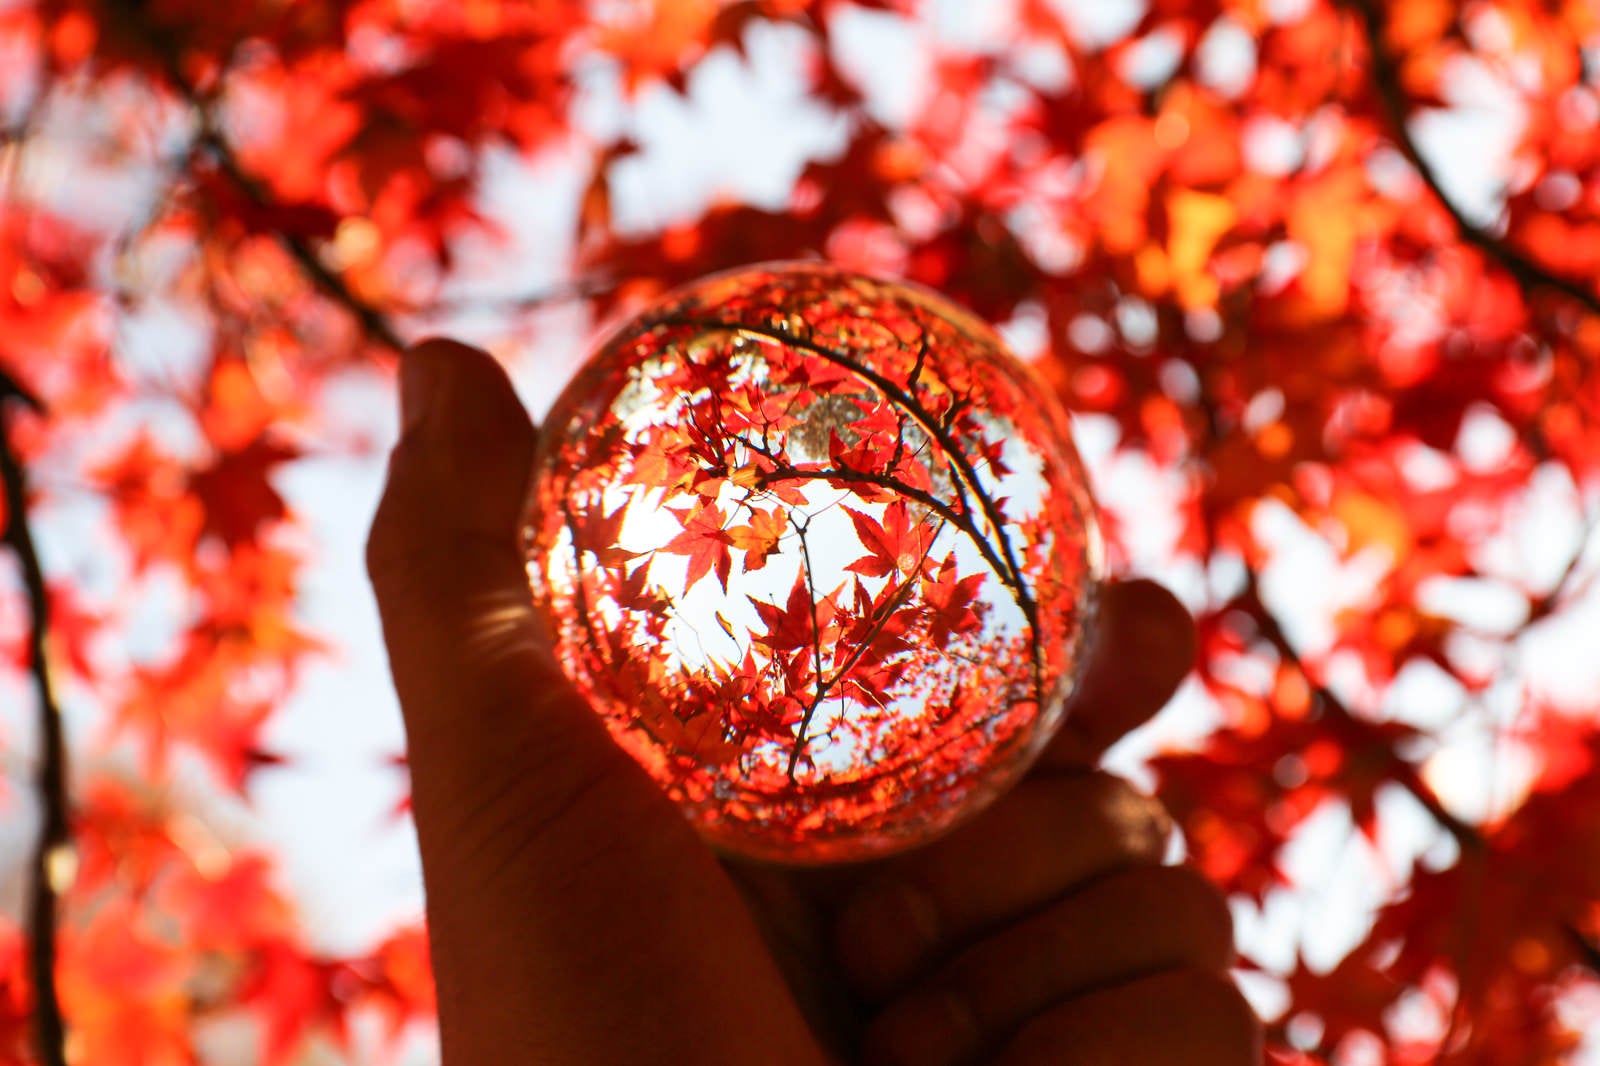 「水晶玉から覗き込む紅葉」の写真